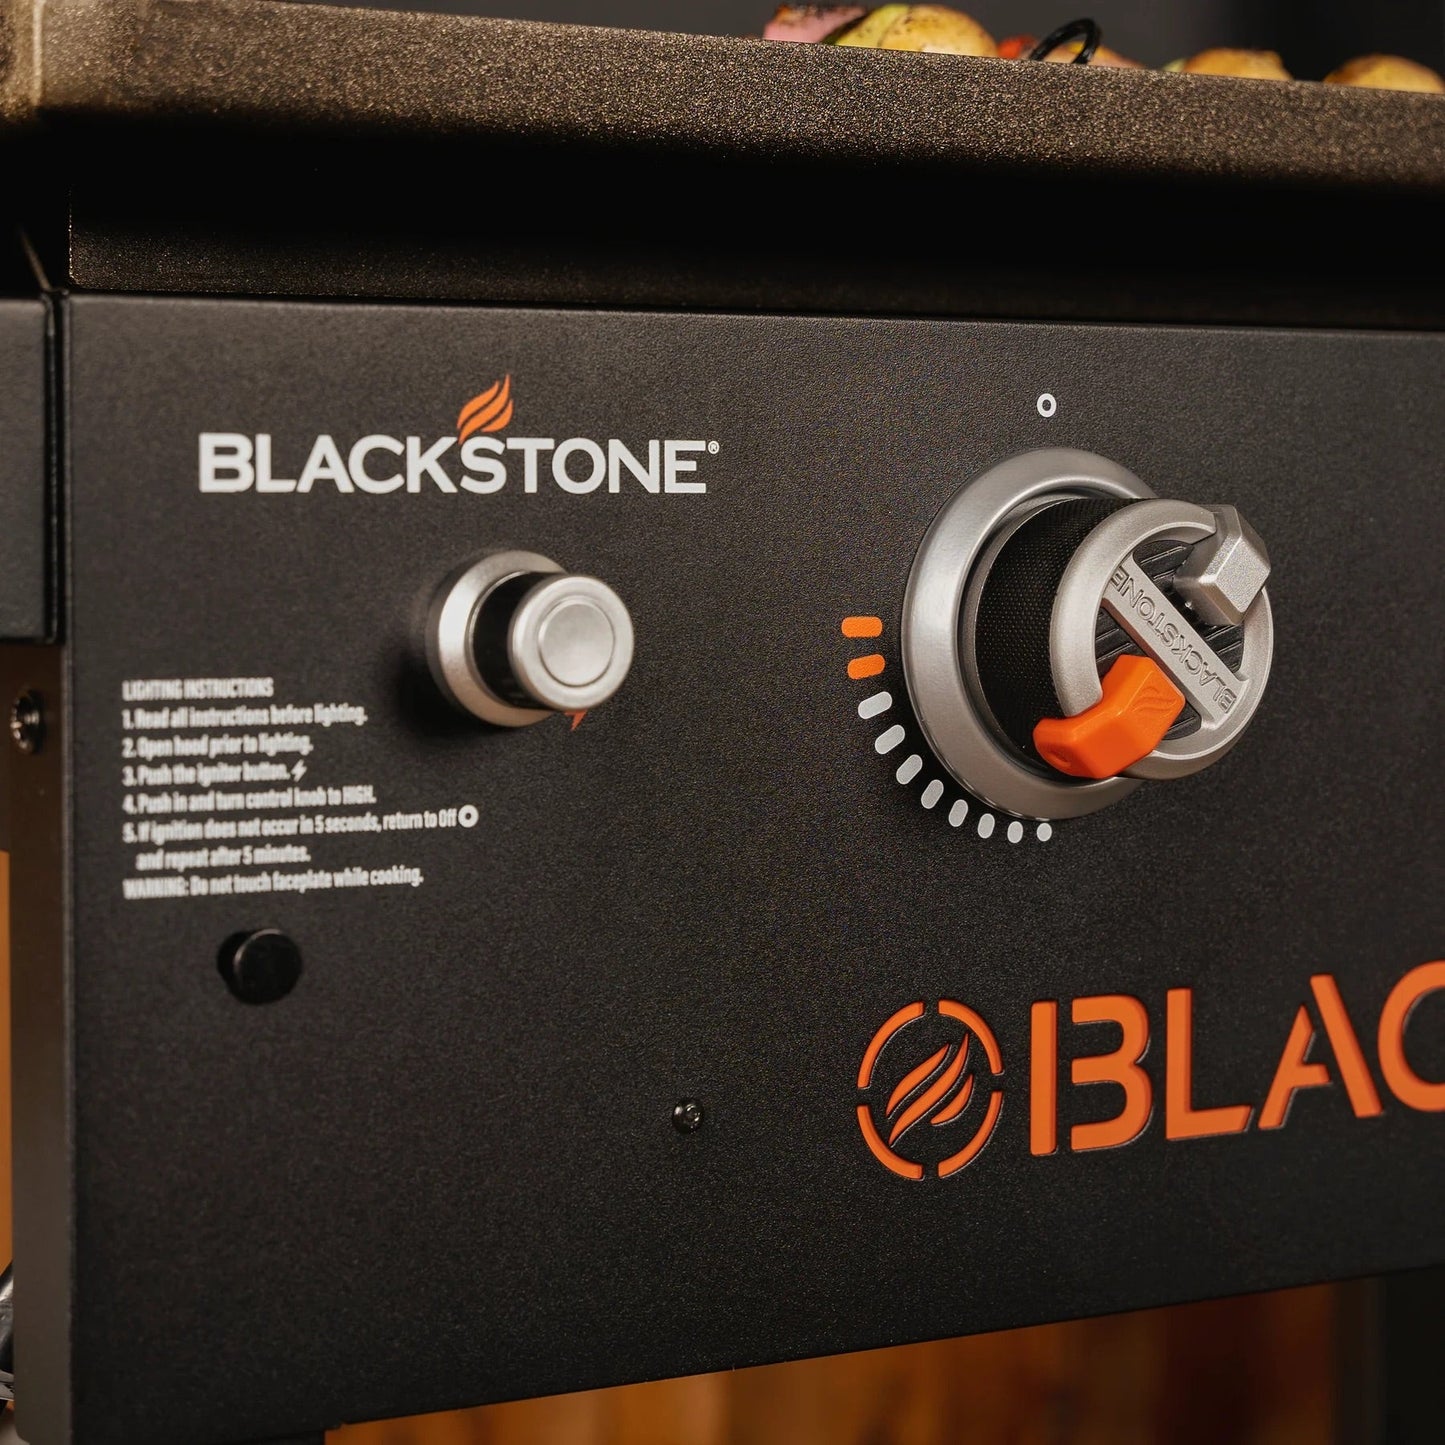 Blackstone 28” ParilaGrilli kannella - ParilaGrillien ja tarvikkeiden verkkokauppa!